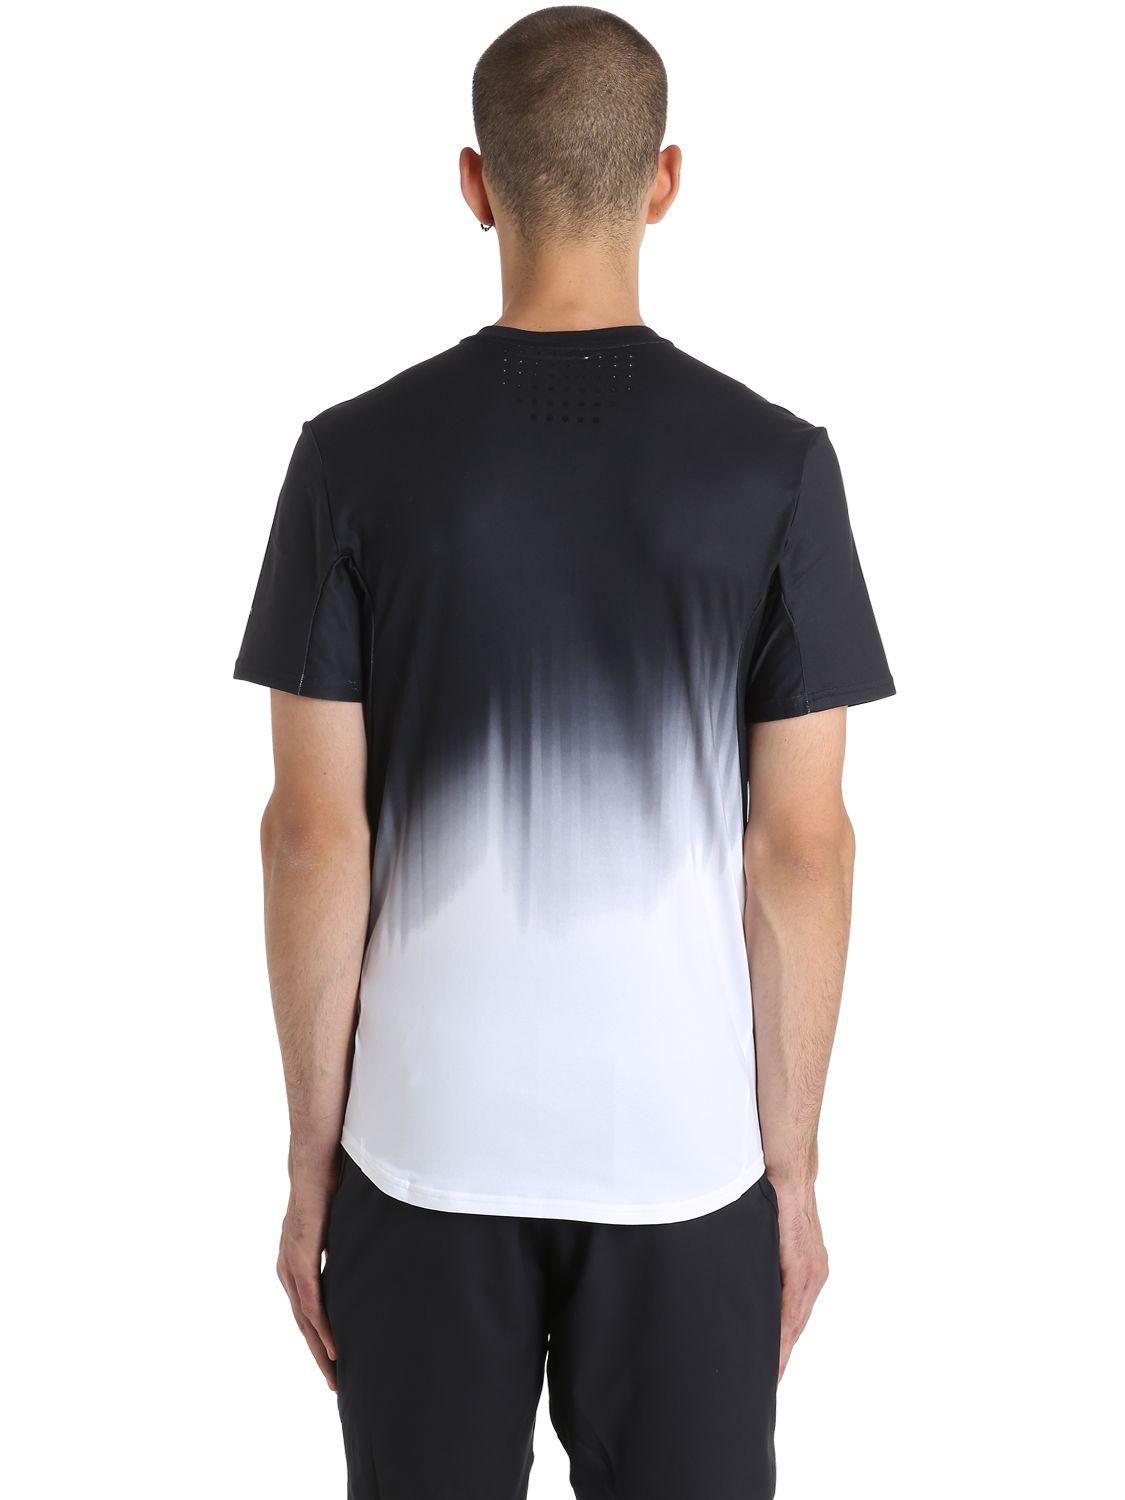 Nike Roger Federer T-shirt in White/Black (Black) for Men | Lyst